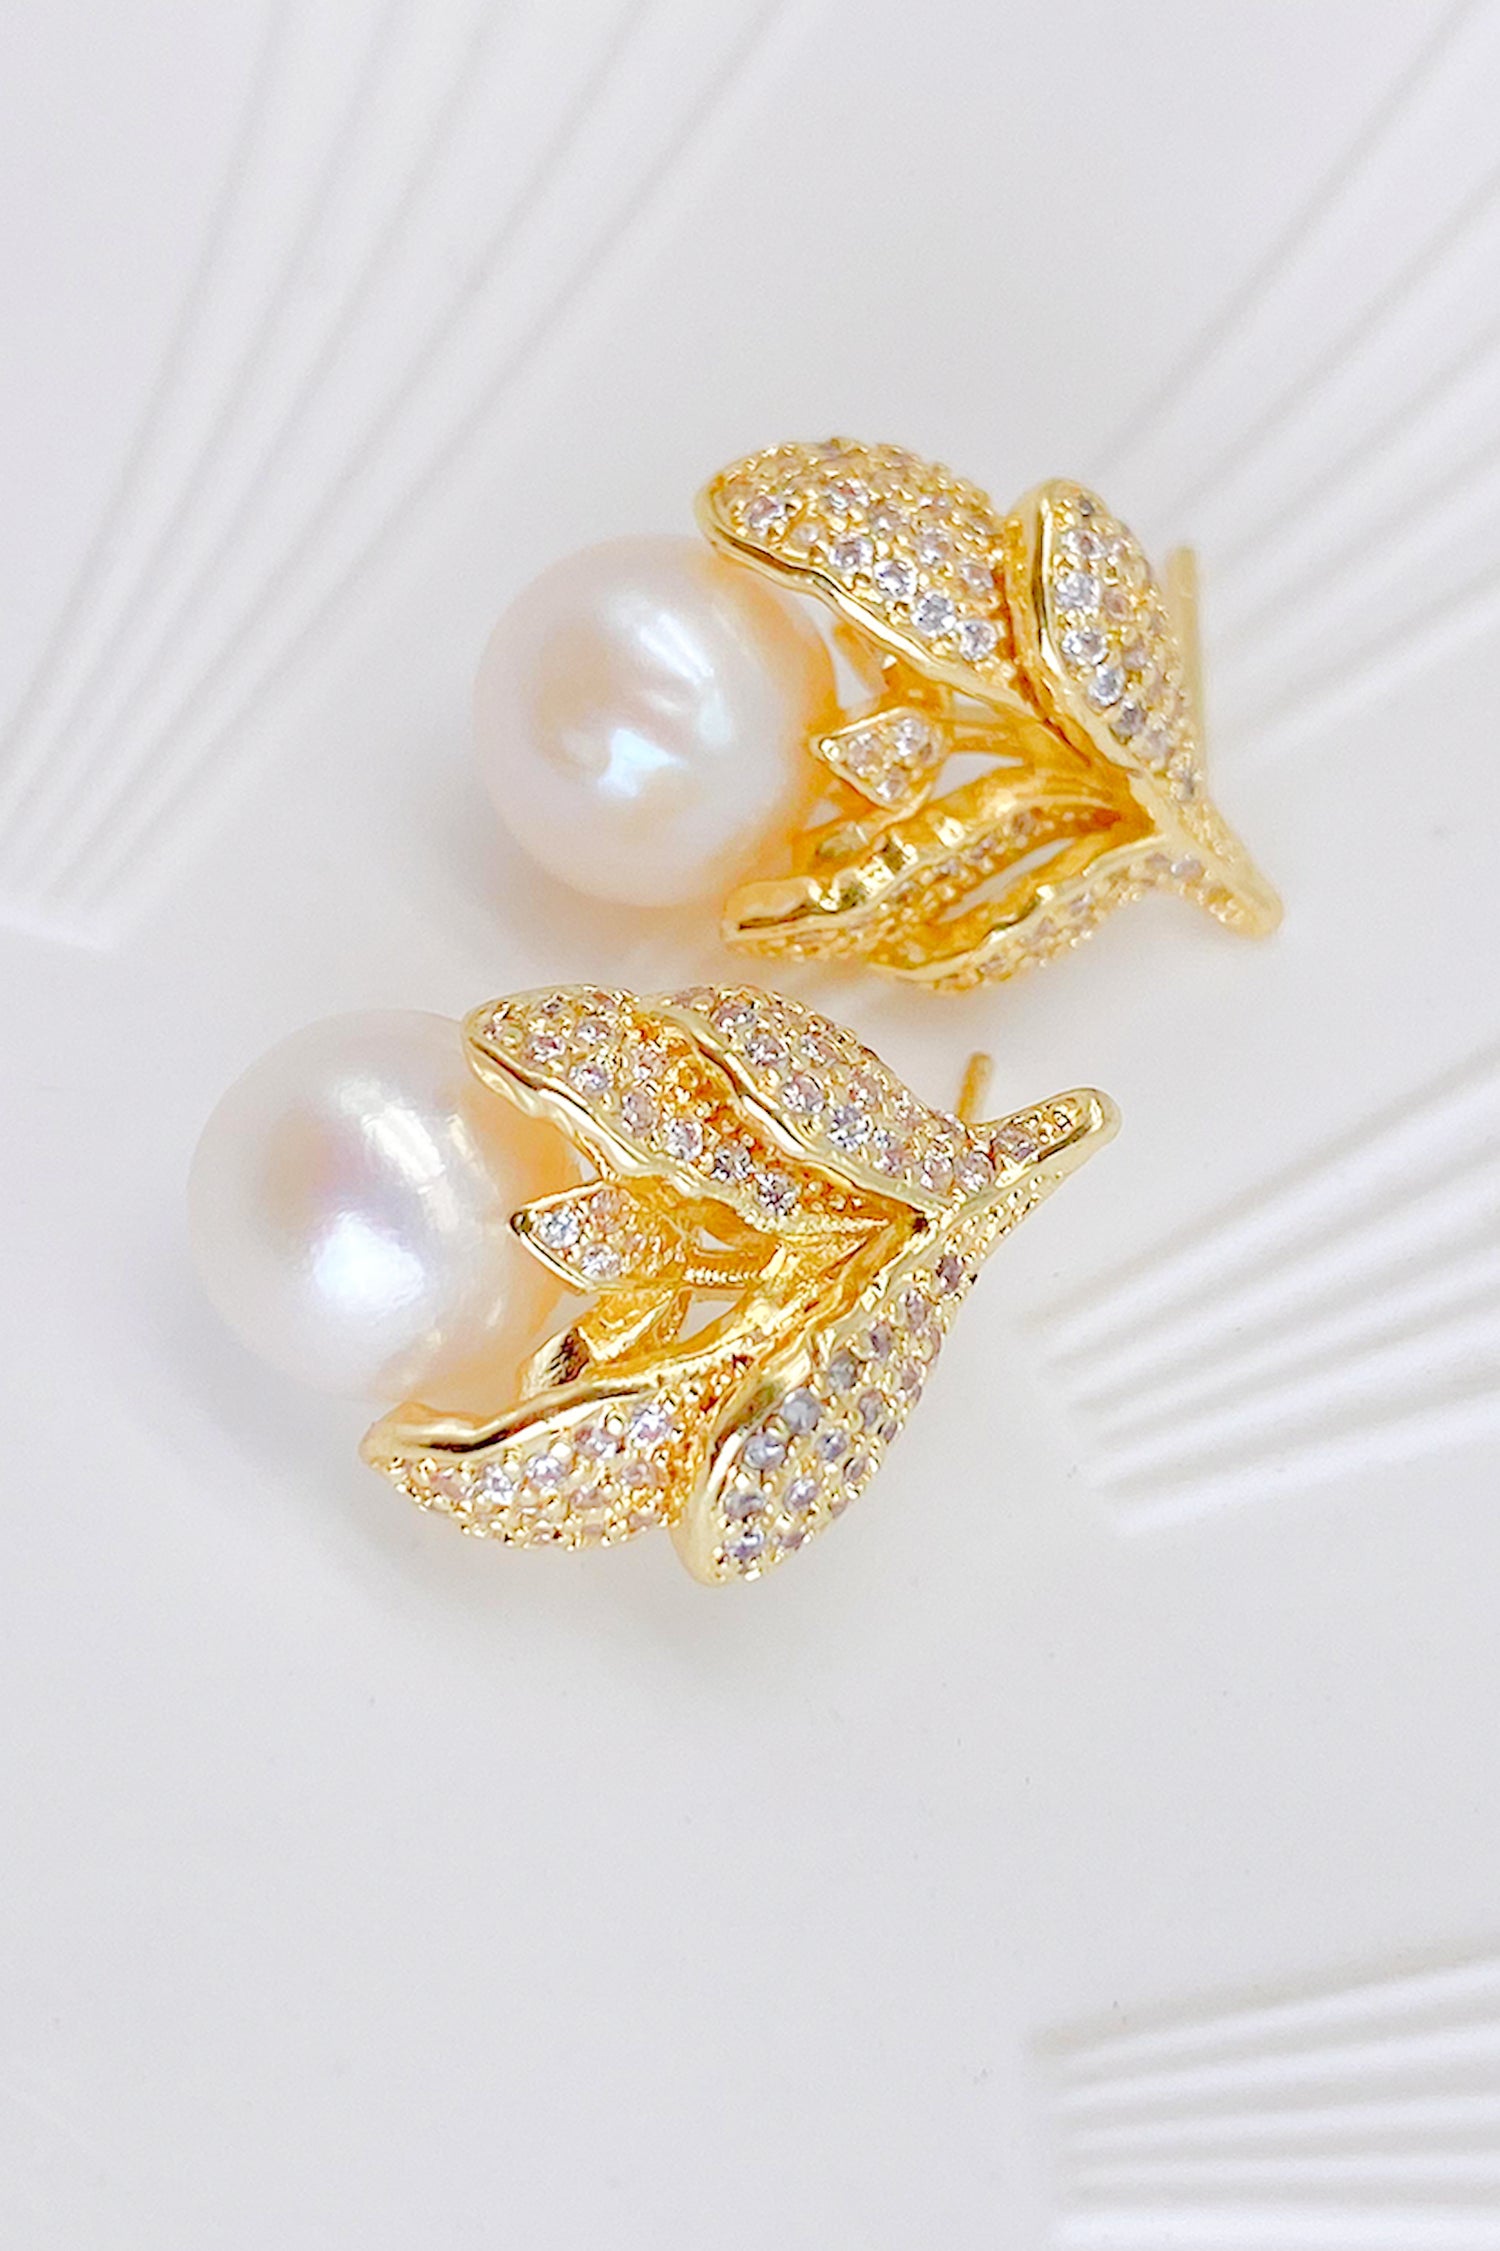 Lison 18K Gold-Filled Rhinestone Leaf Pearl Earrings